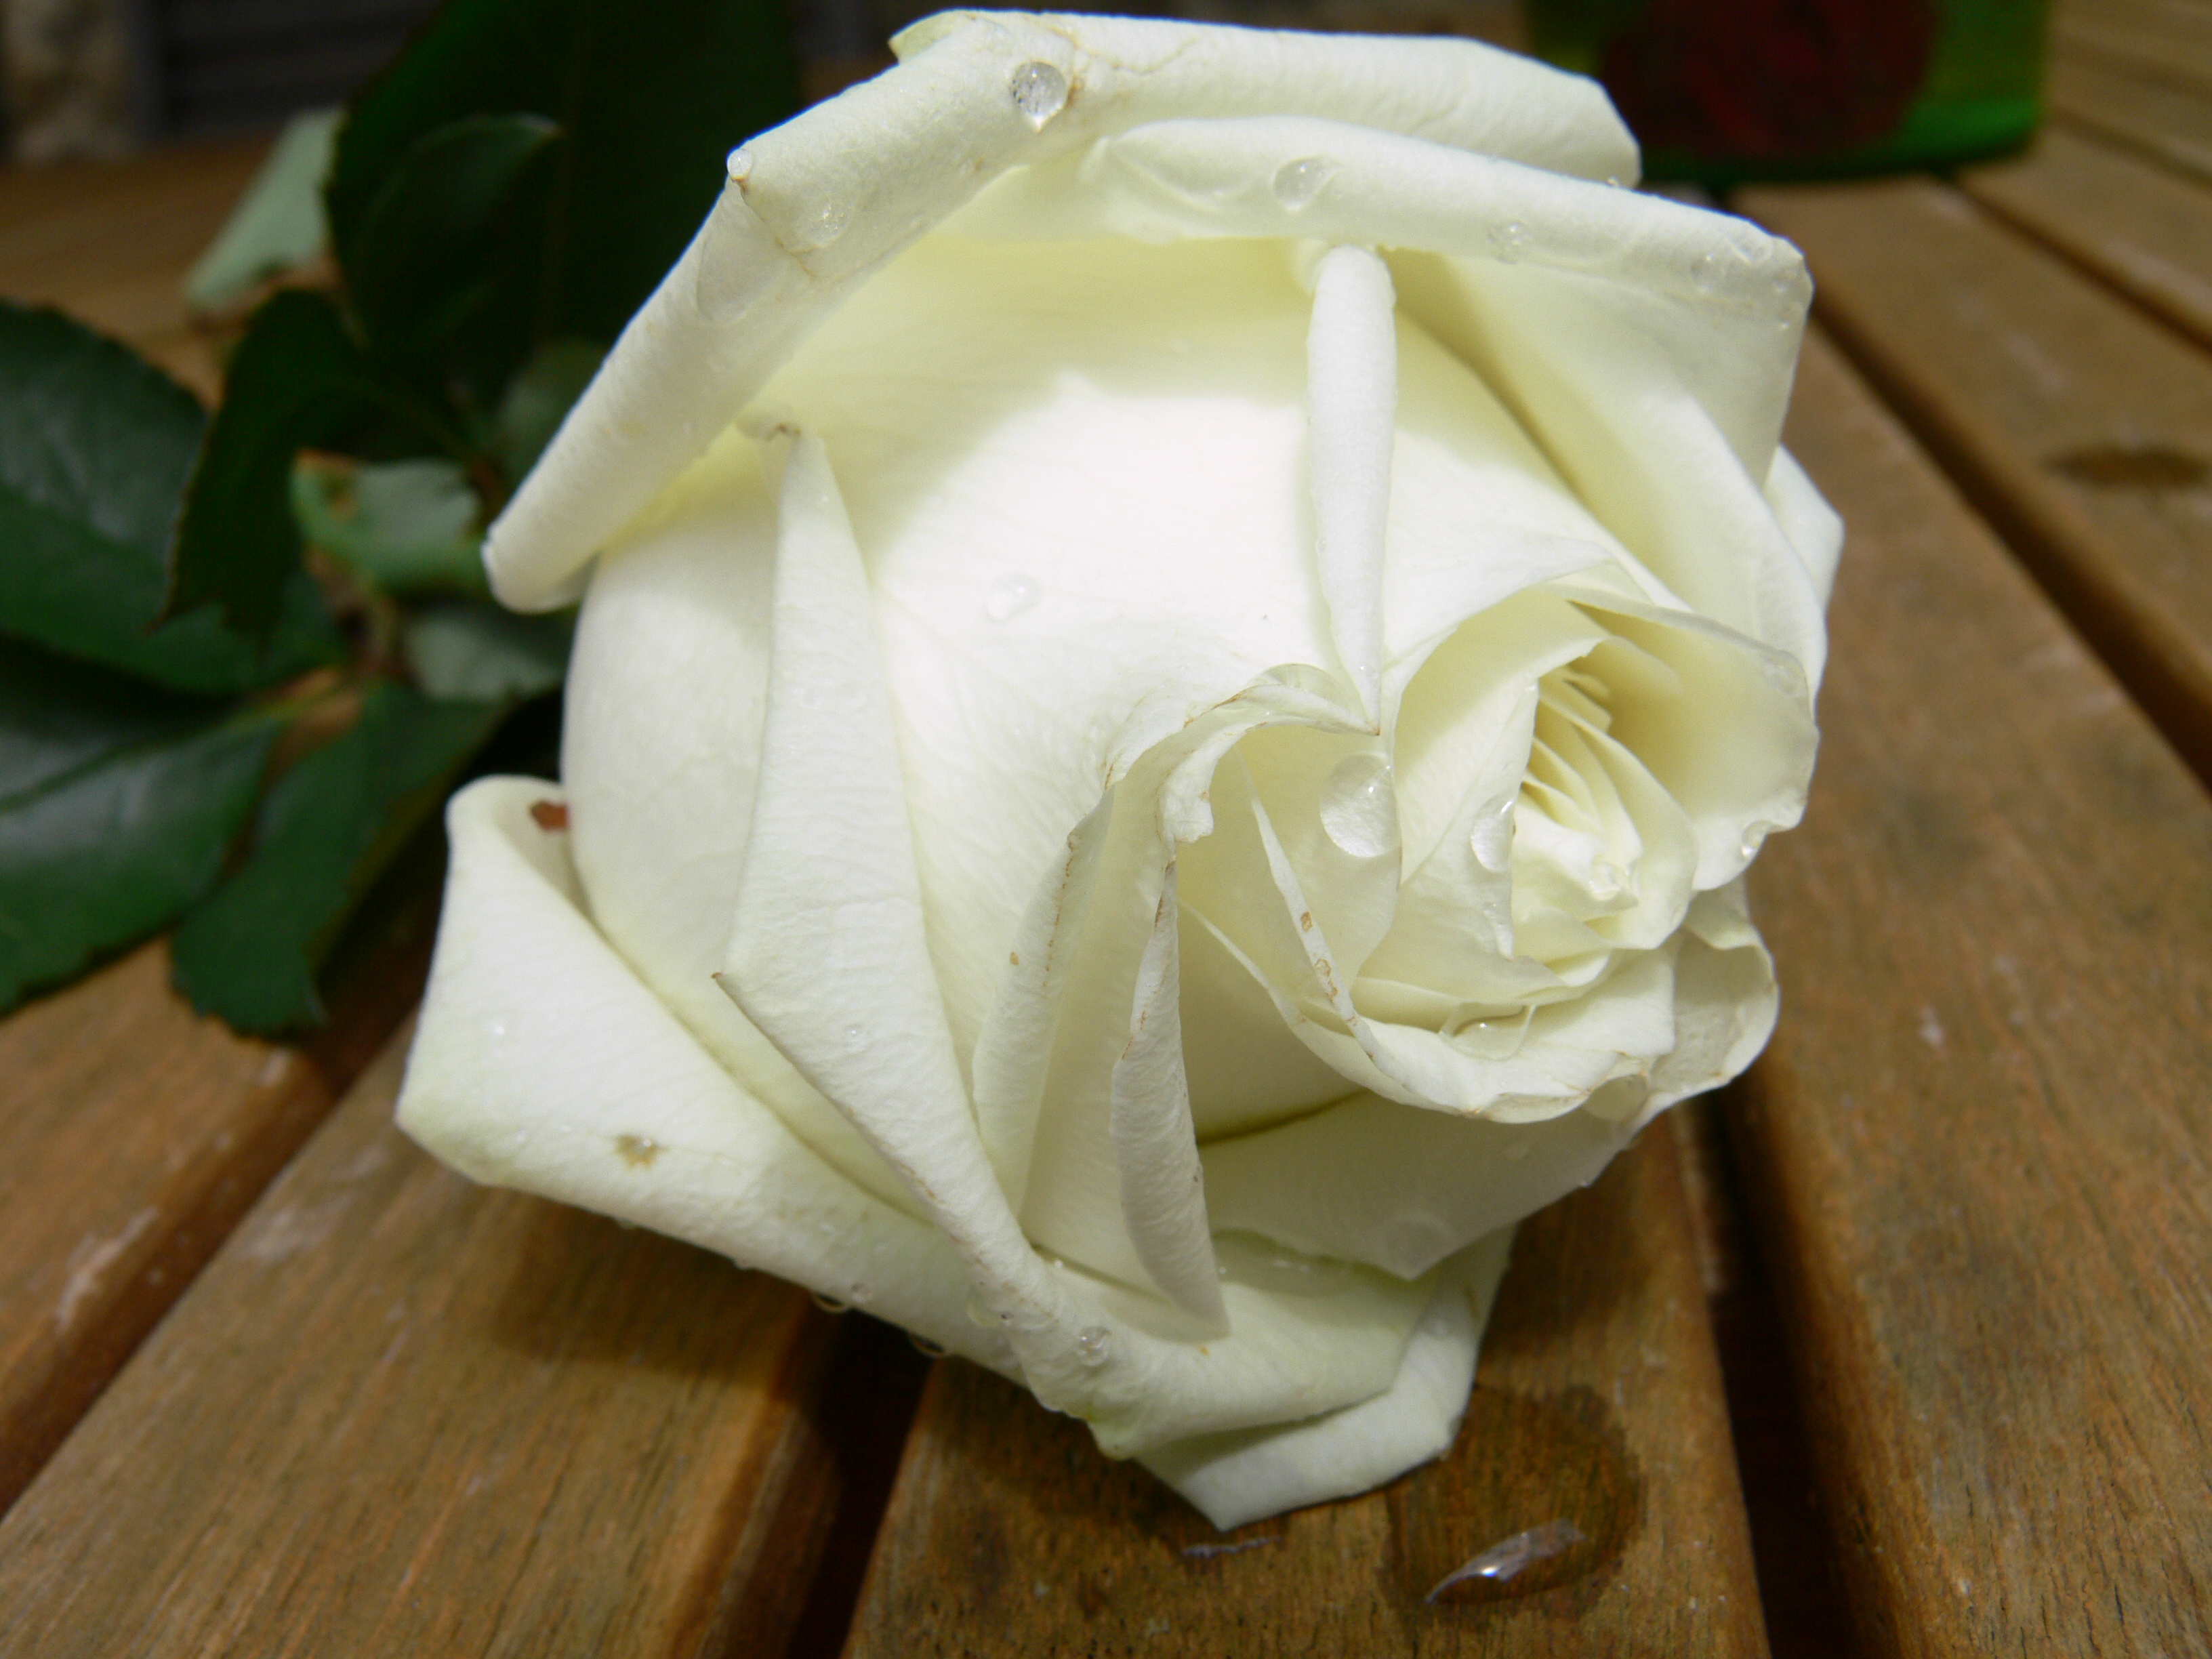 Stock 018 - Wet White Rose by senzostock on DeviantArt